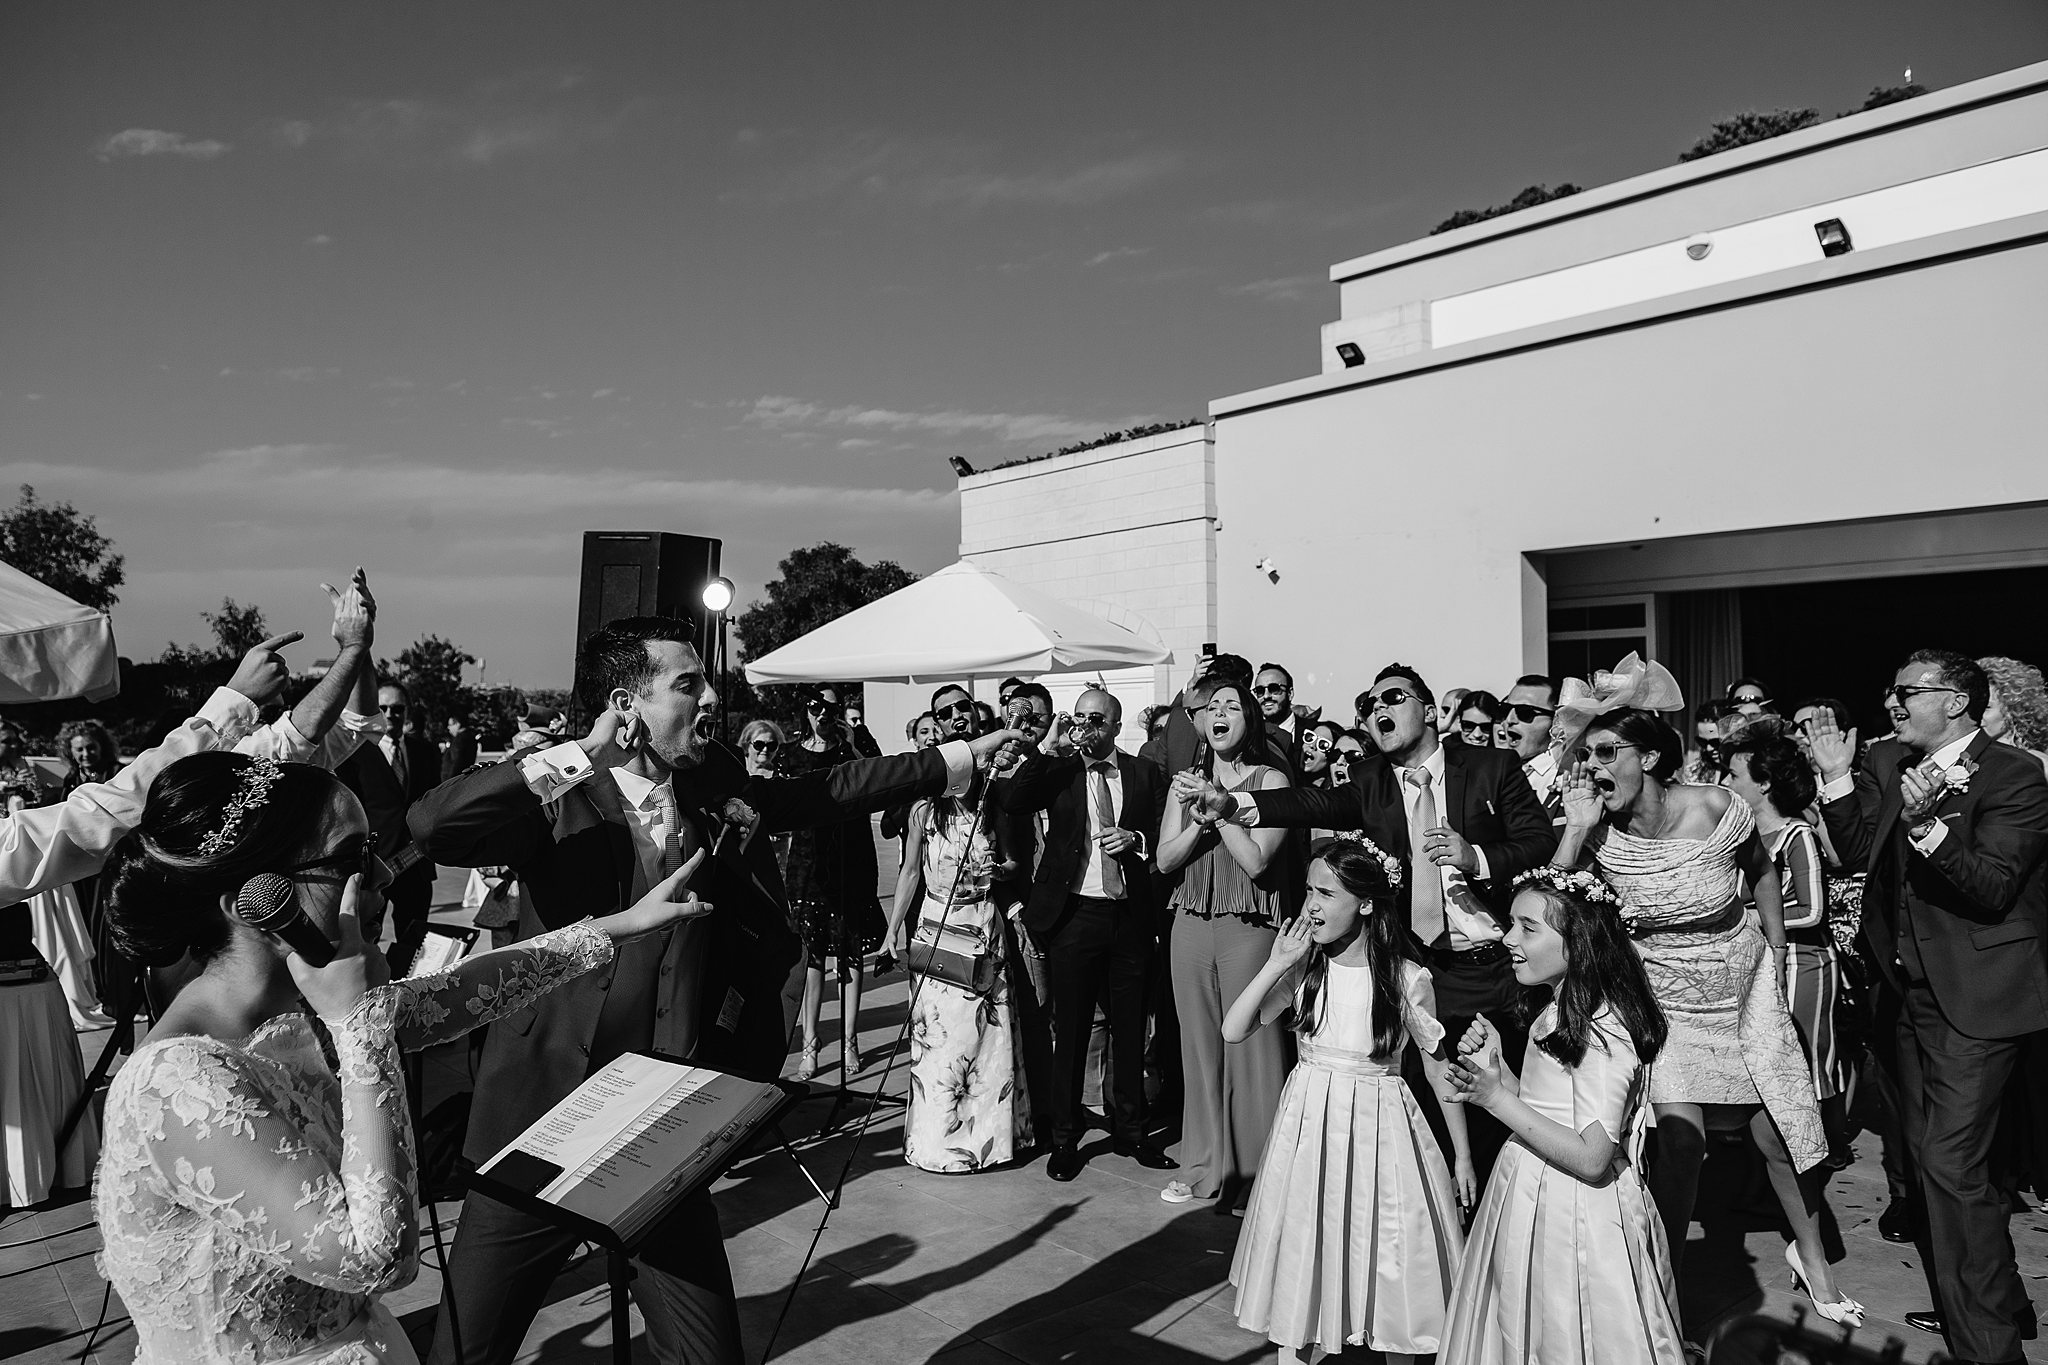 Analise & Darryl | The Xara Lodge | Wedding Photography Malta | Shane P. WattsAnalise & Darryl | The Xara Lodge | Wedding Photography Malta | Shane P. Watts